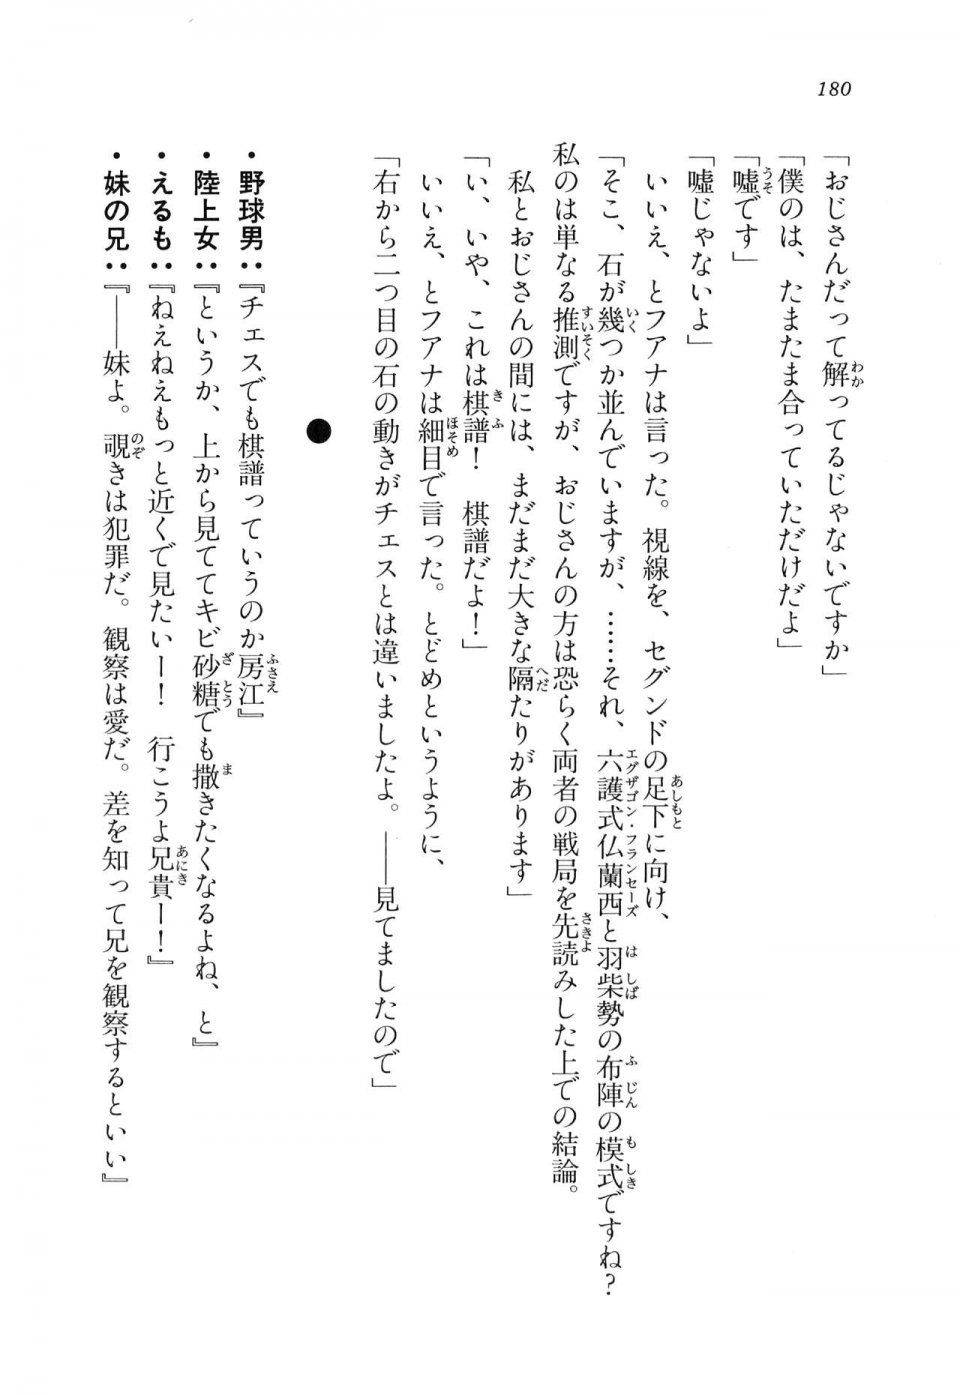 Kyoukai Senjou no Horizon LN Vol 11(5A) - Photo #180